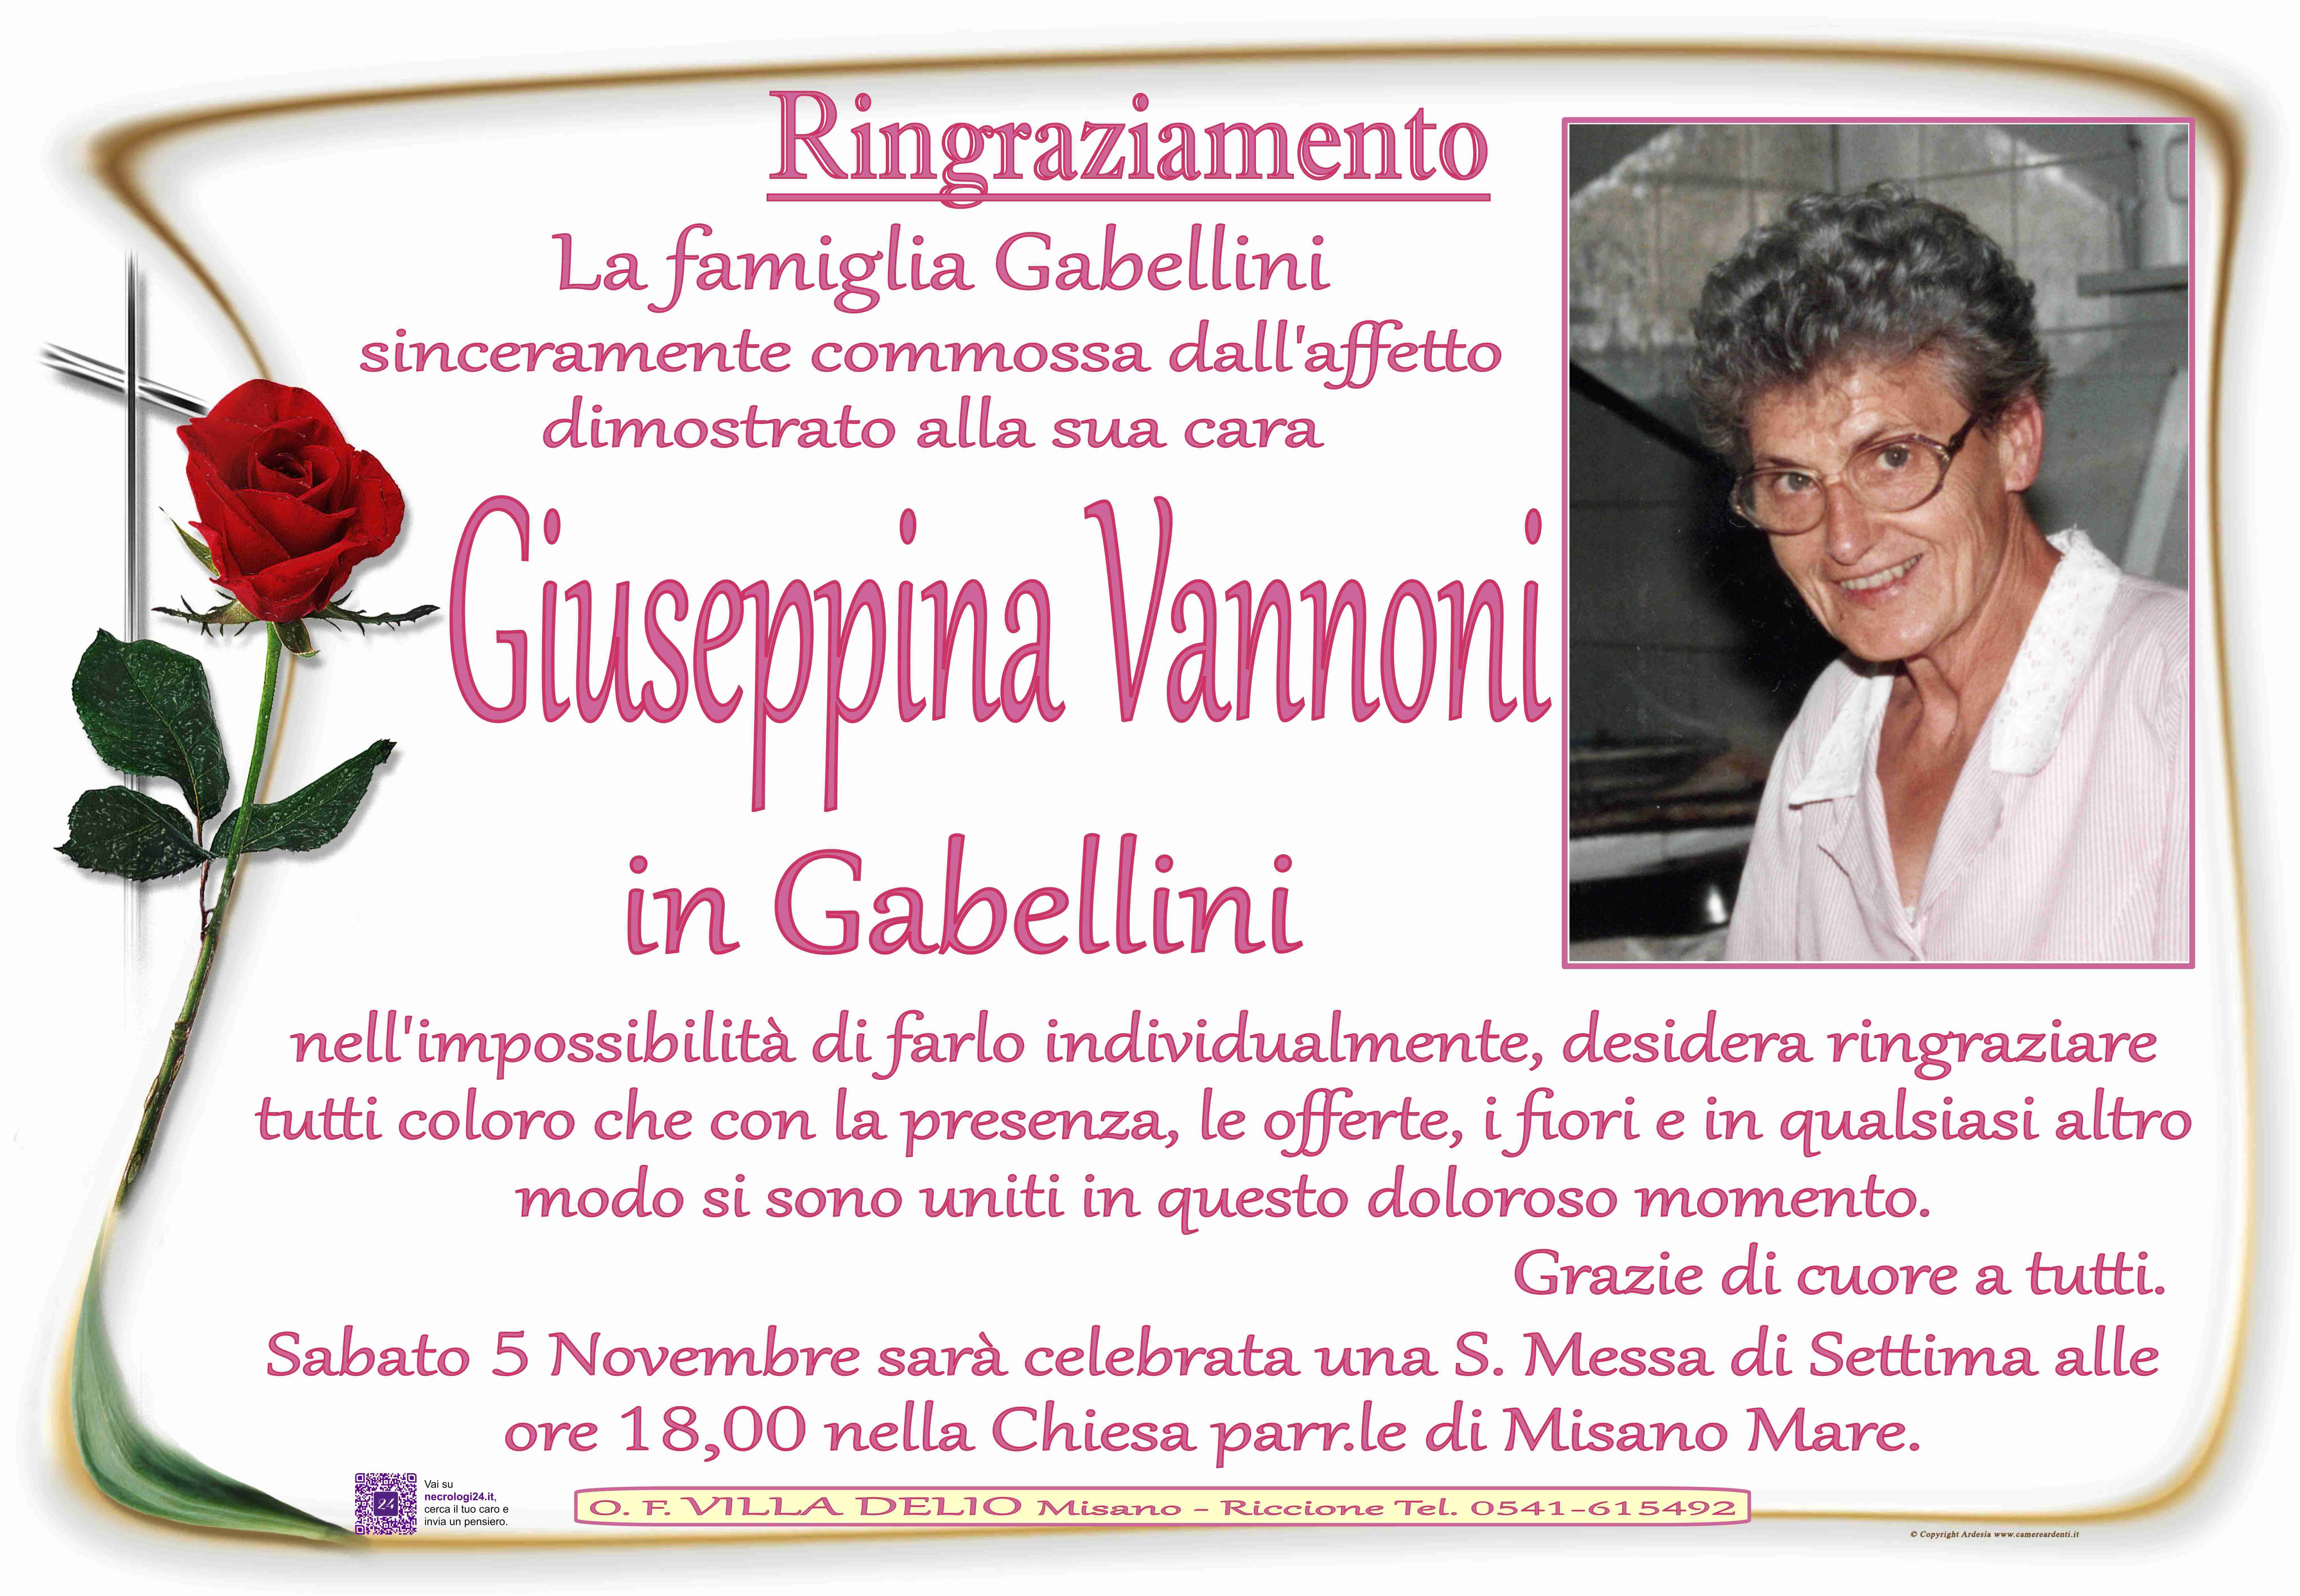 Giuseppina Vannoni